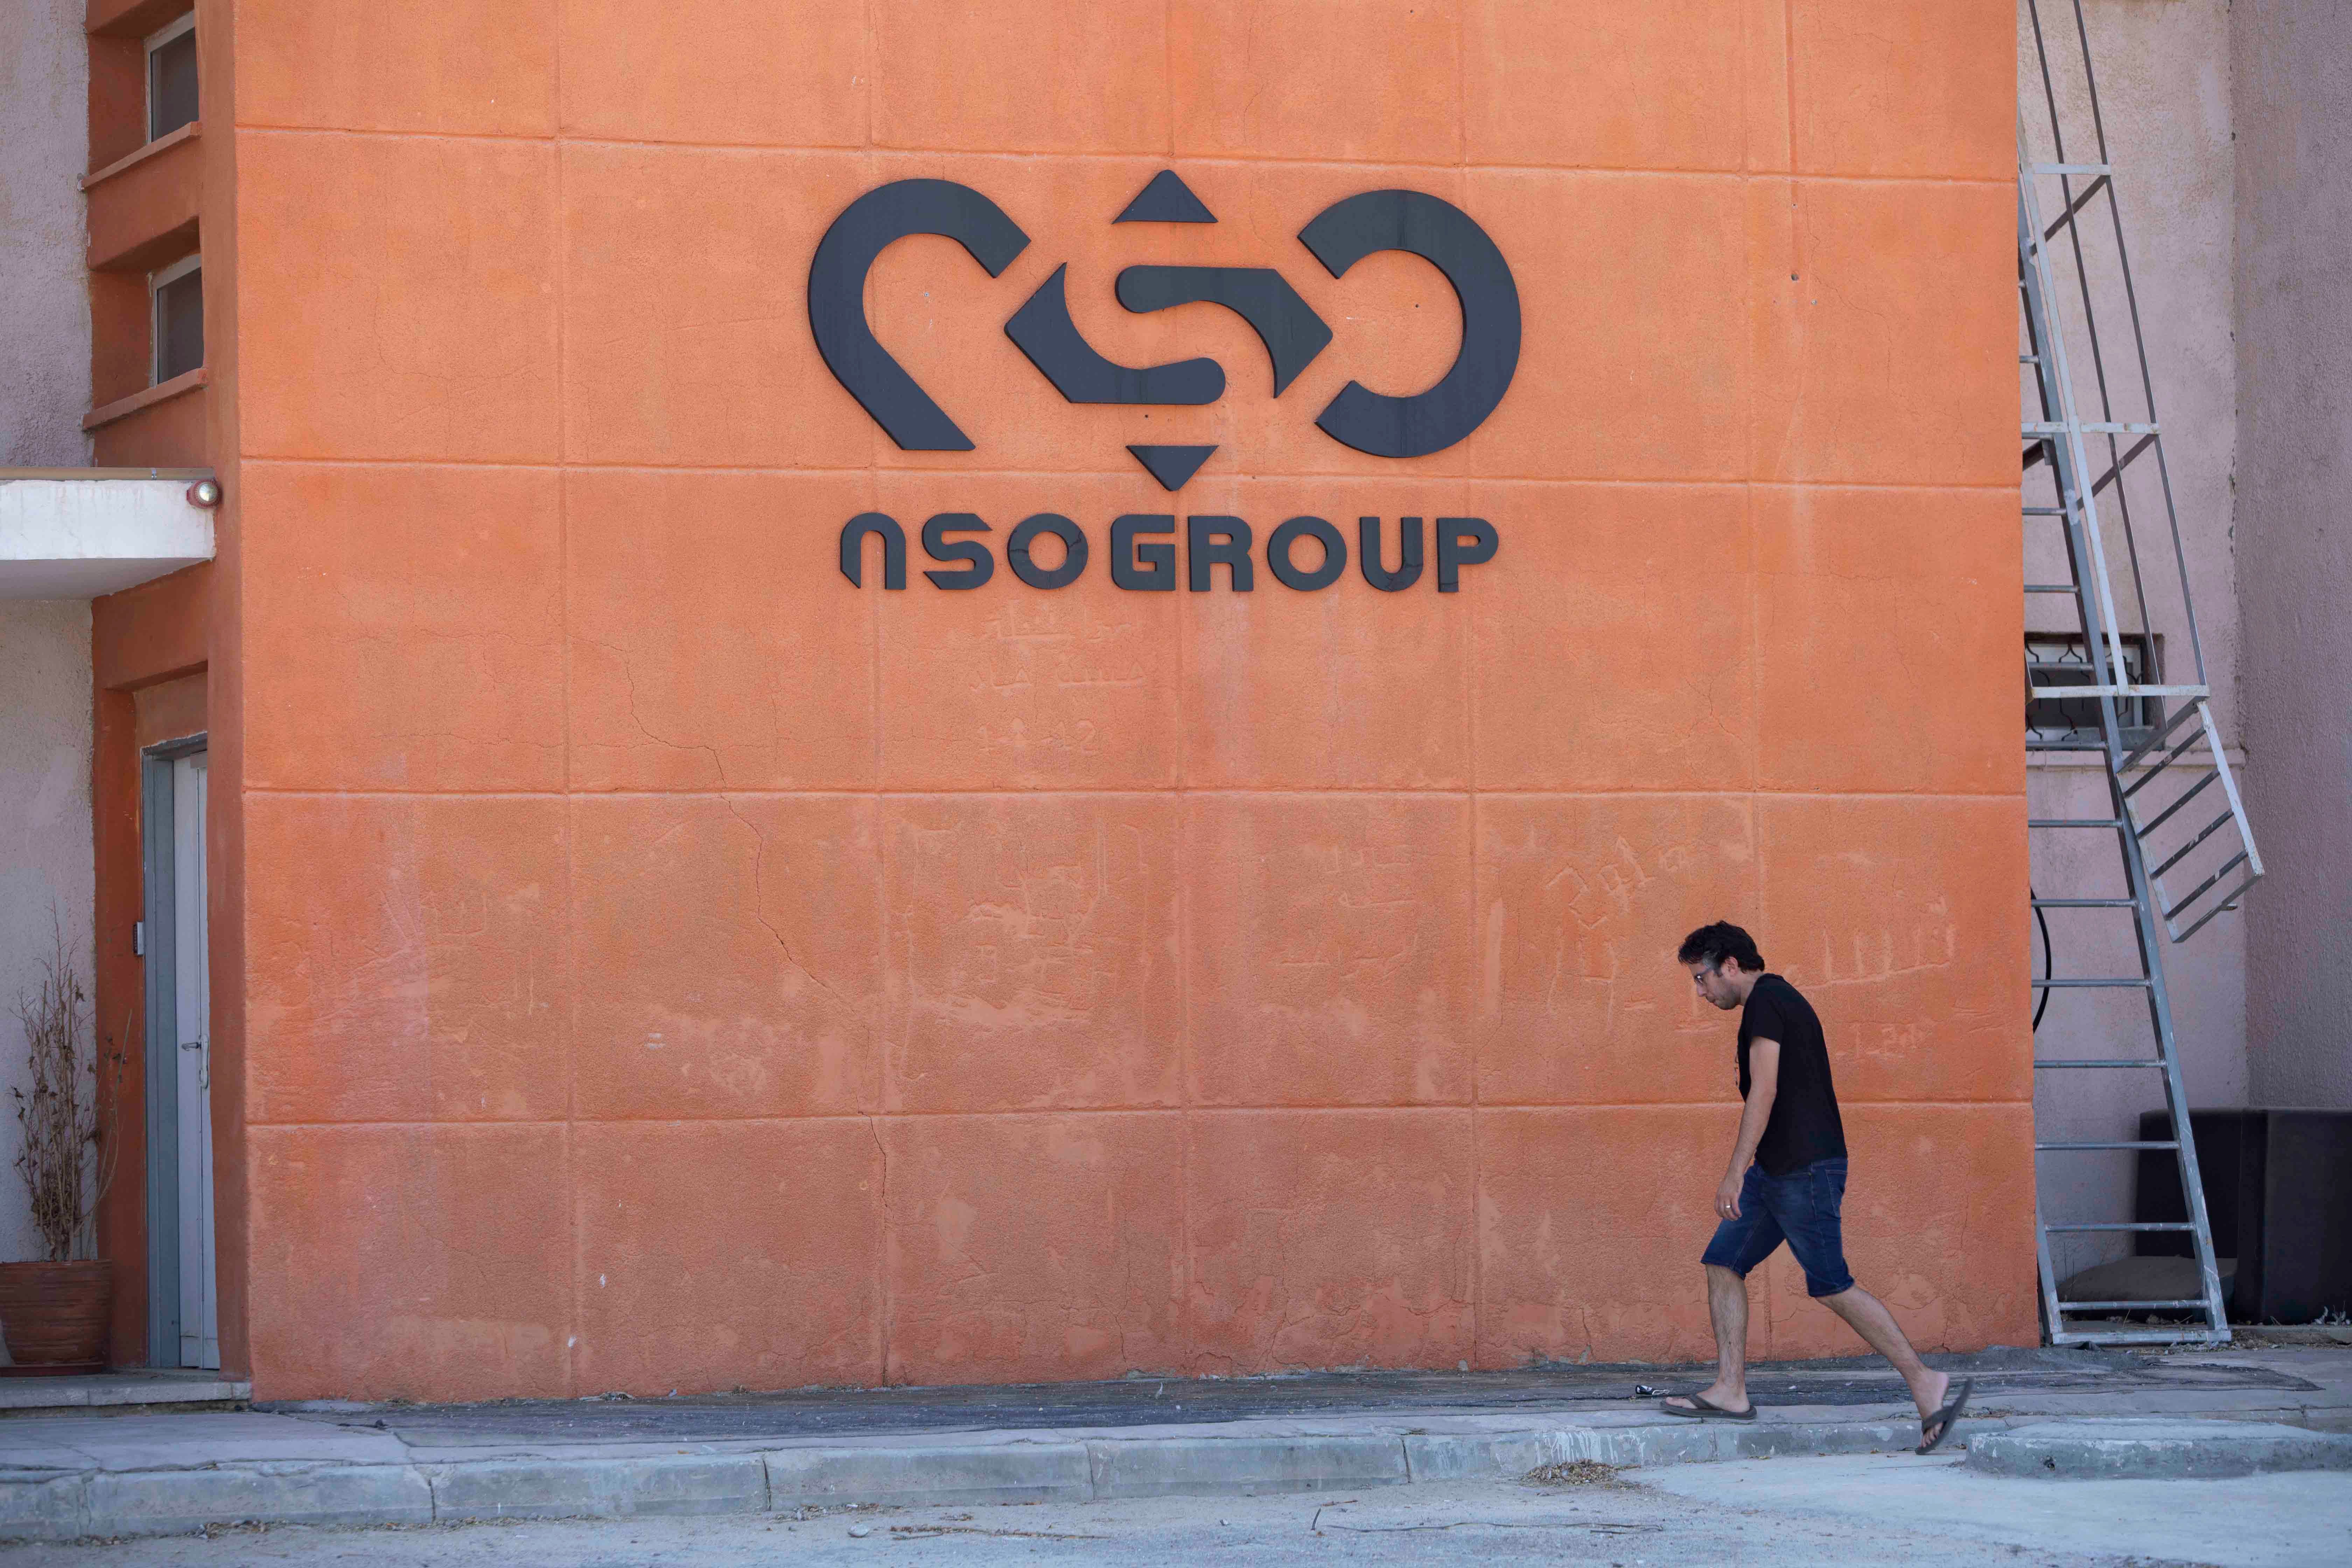 Le logo de la société israélienne NSO Group, visible sur le mur d’une filiale du groupe près de la ville de Sapir, dans le sud d’Israël. Photo prise le 24 août 2021.